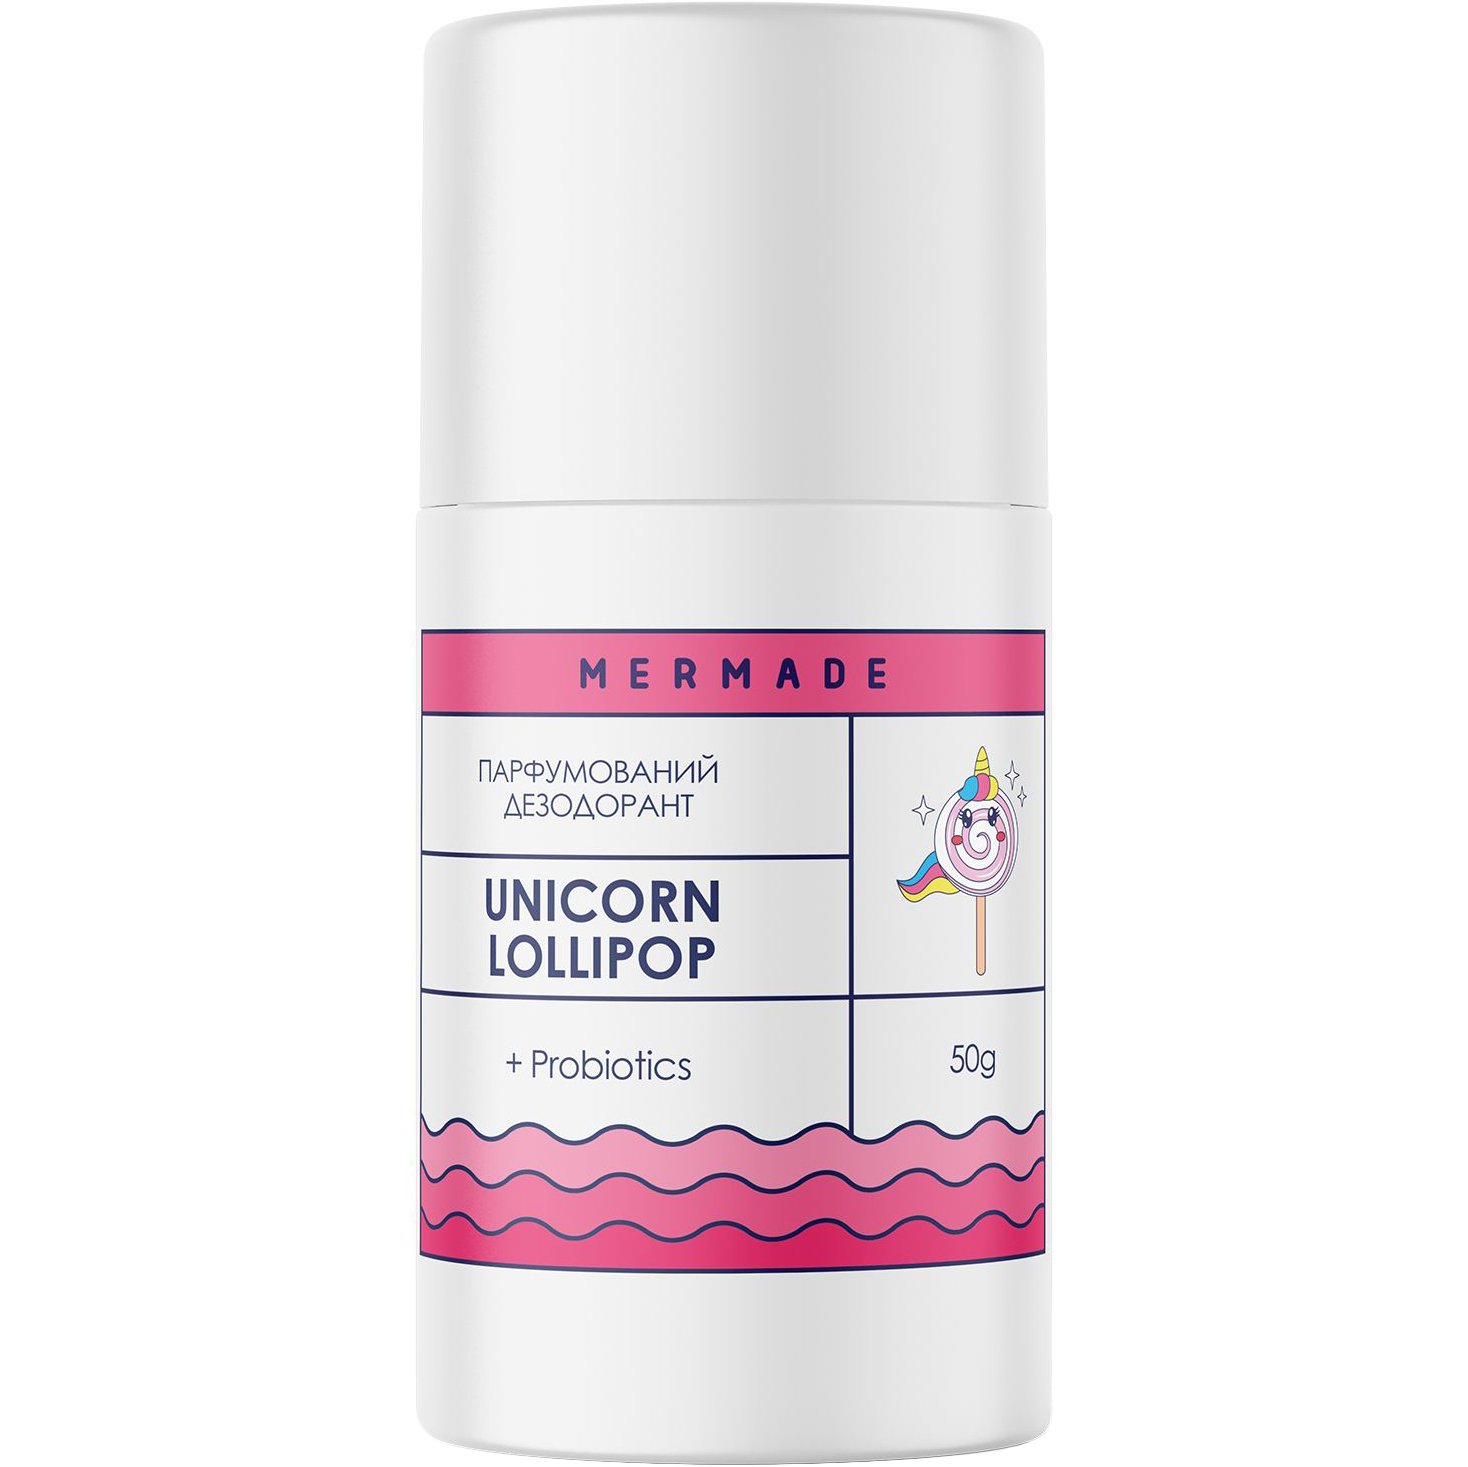 Парфюмированный дезодорант Mermade Unicorn Lolipop, с пробиотиком, 50 г - фото 1